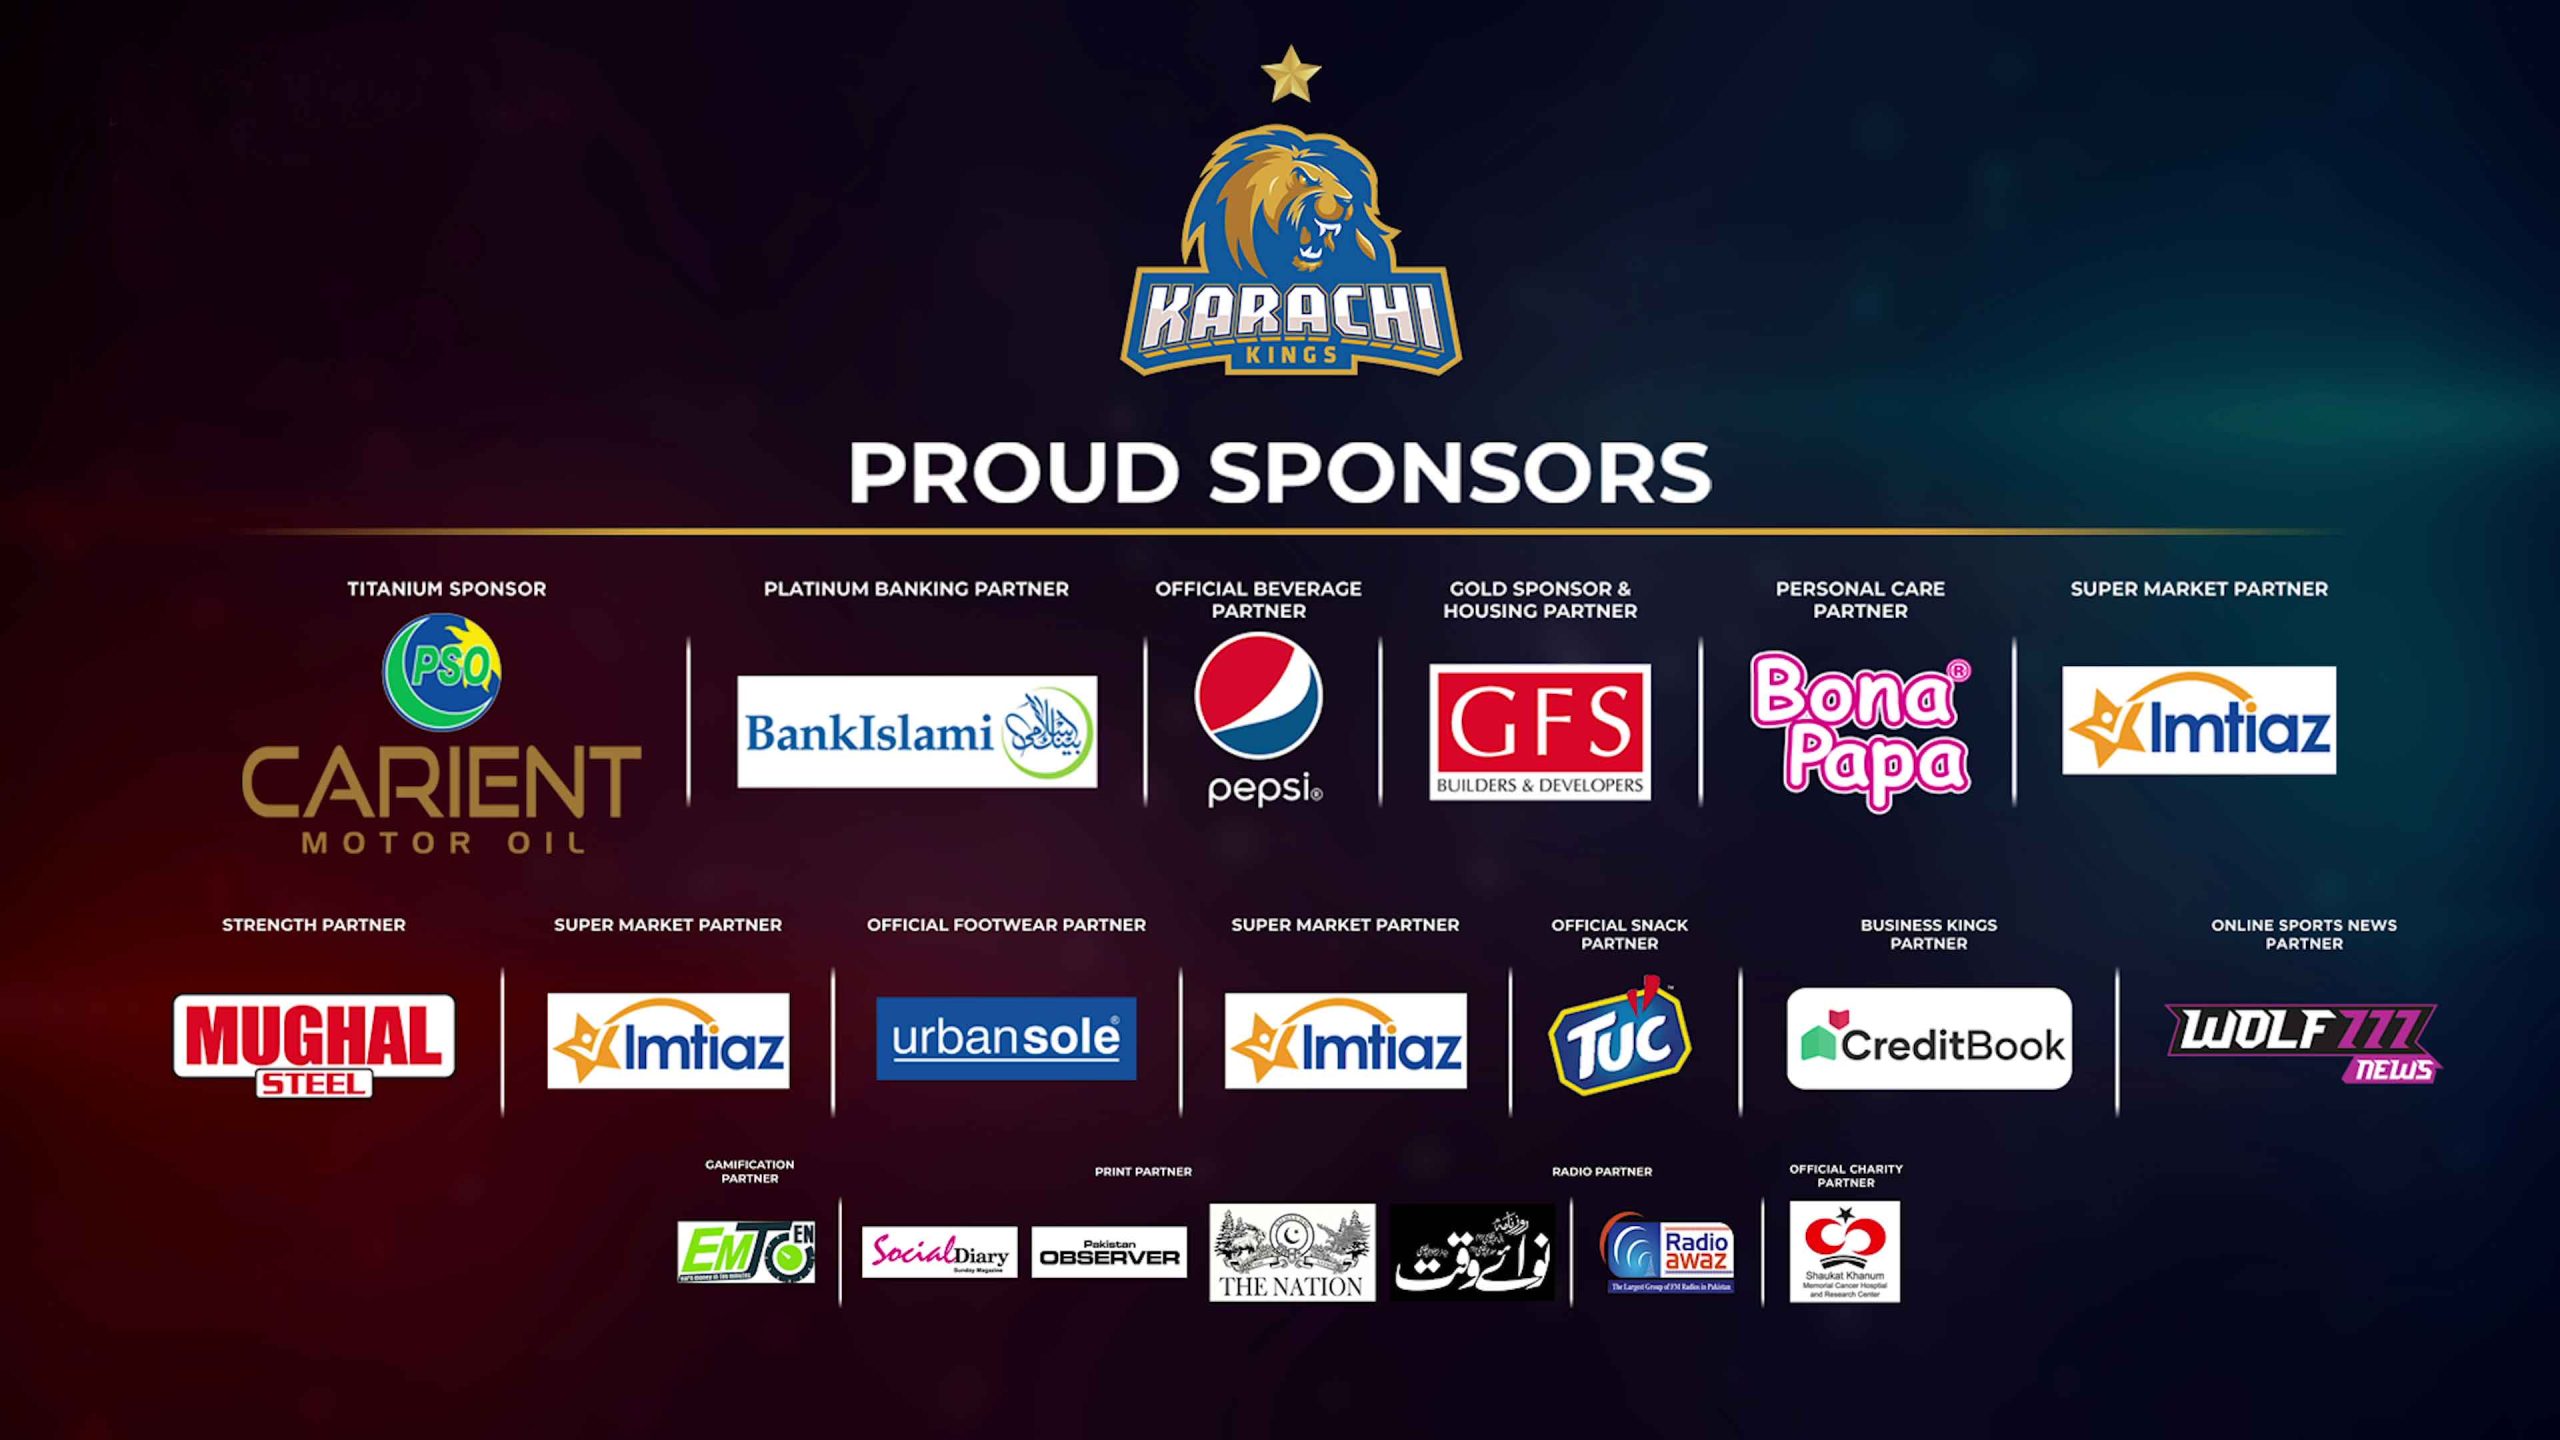 https://karachikings.com.pk/wp-content/uploads/2022/01/sponsors-latest-min-scaled.jpg